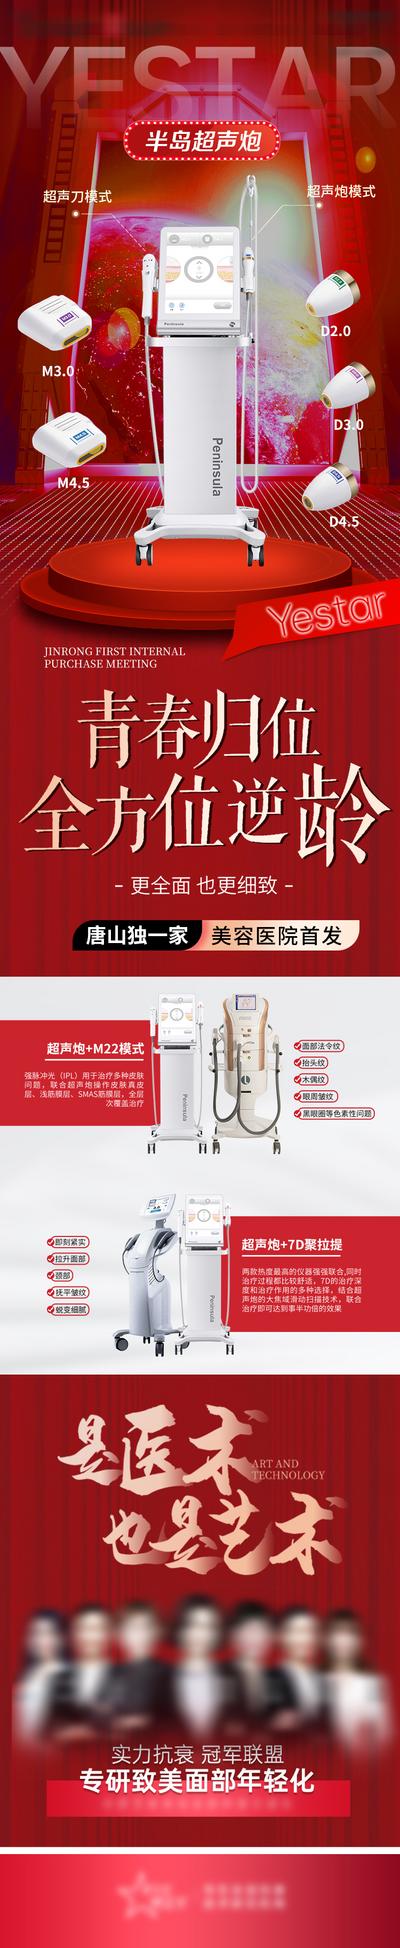 【南门网】广告 海报 医美 超声炮 机械 设备 长图 介绍